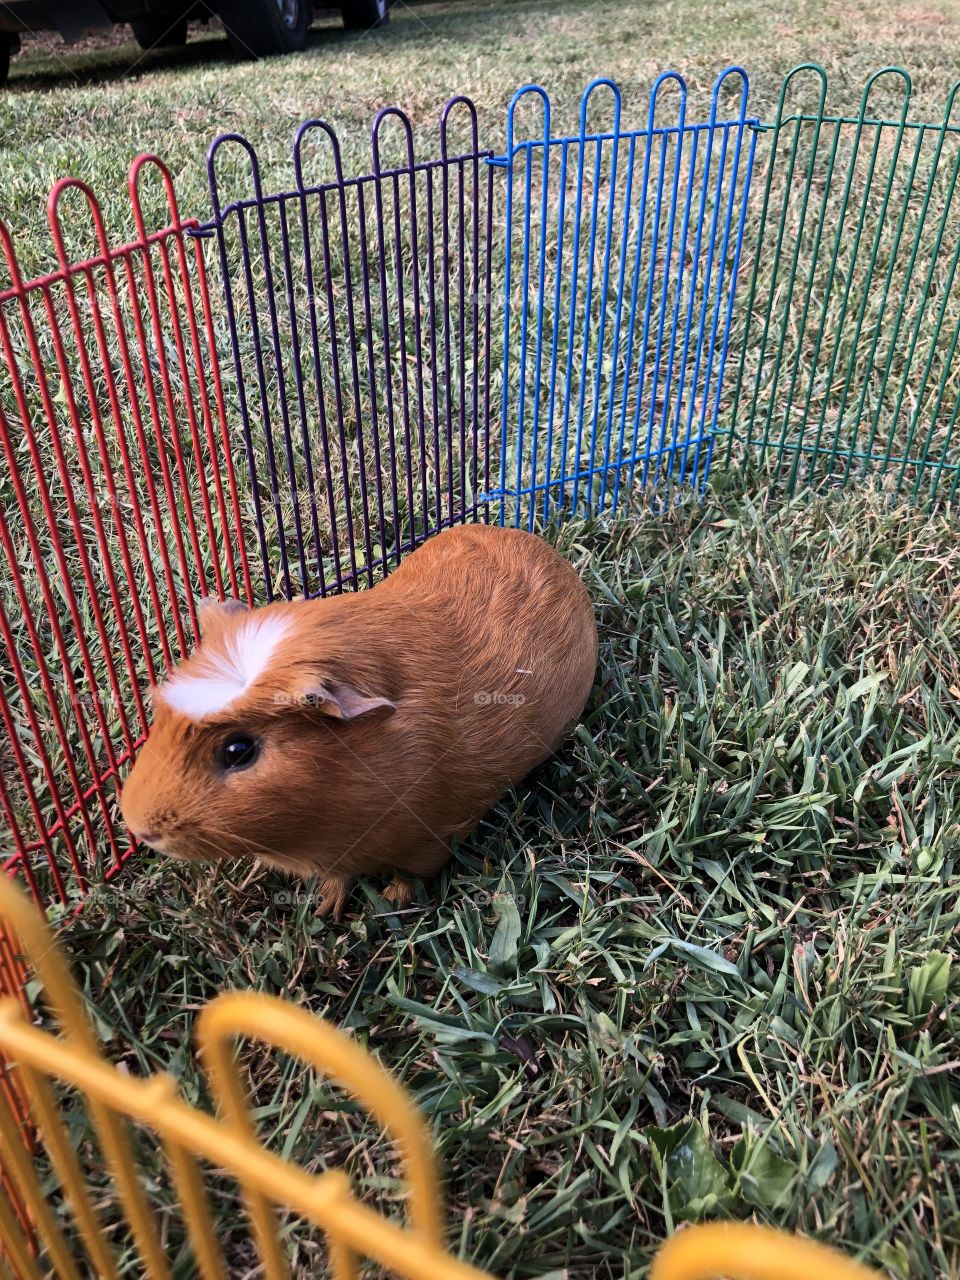 Piggy enjoying the outdoors